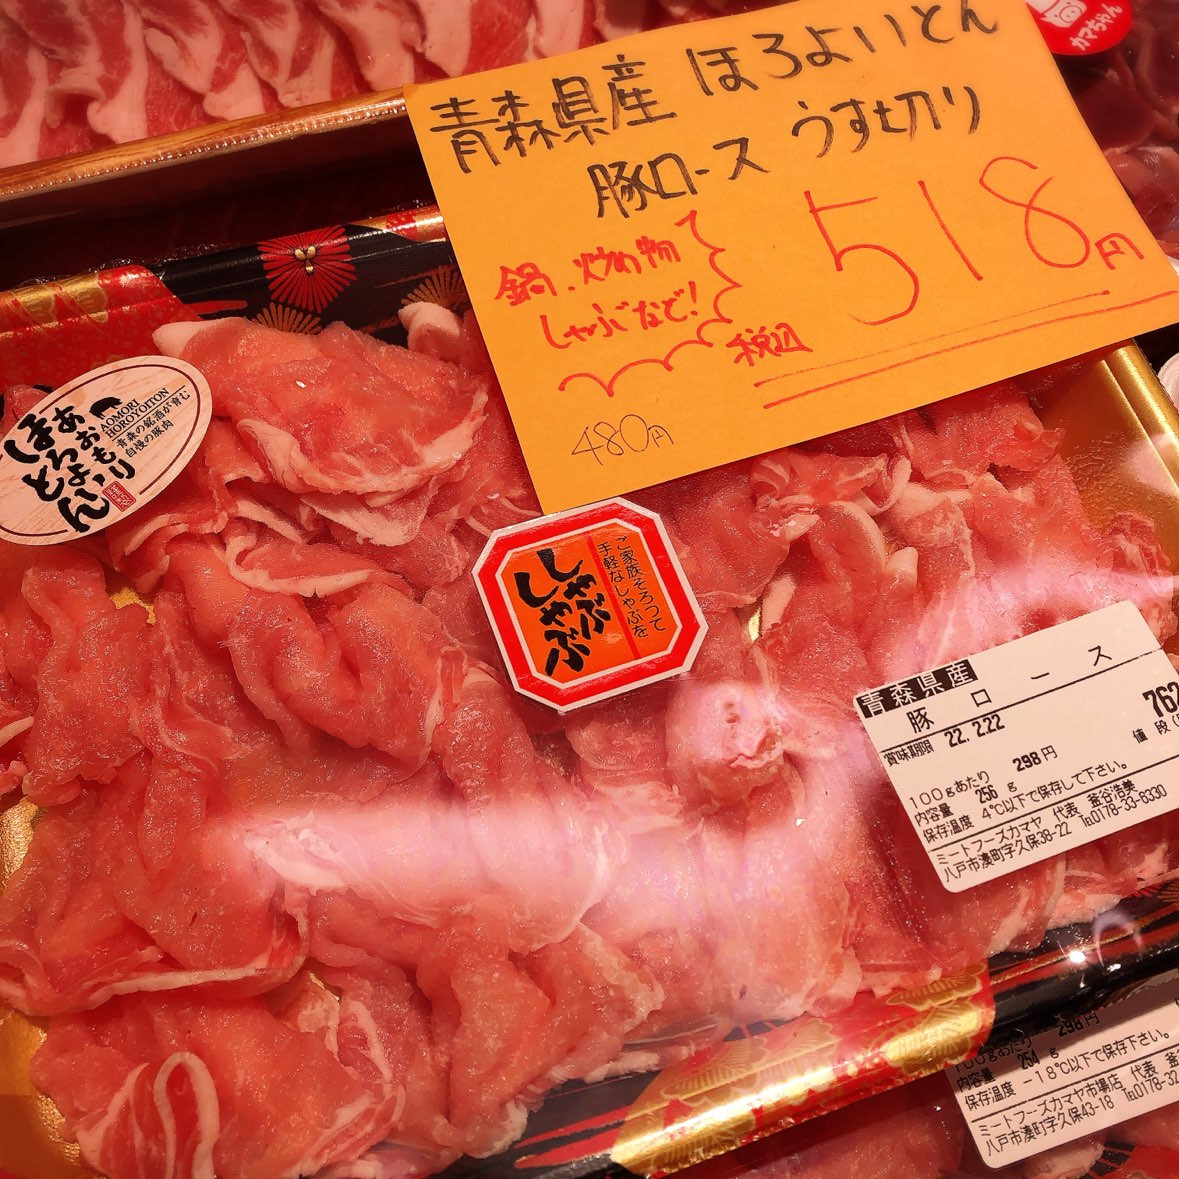 本日は青森県産ほろよいとん豚ロース薄切りがお買得です。